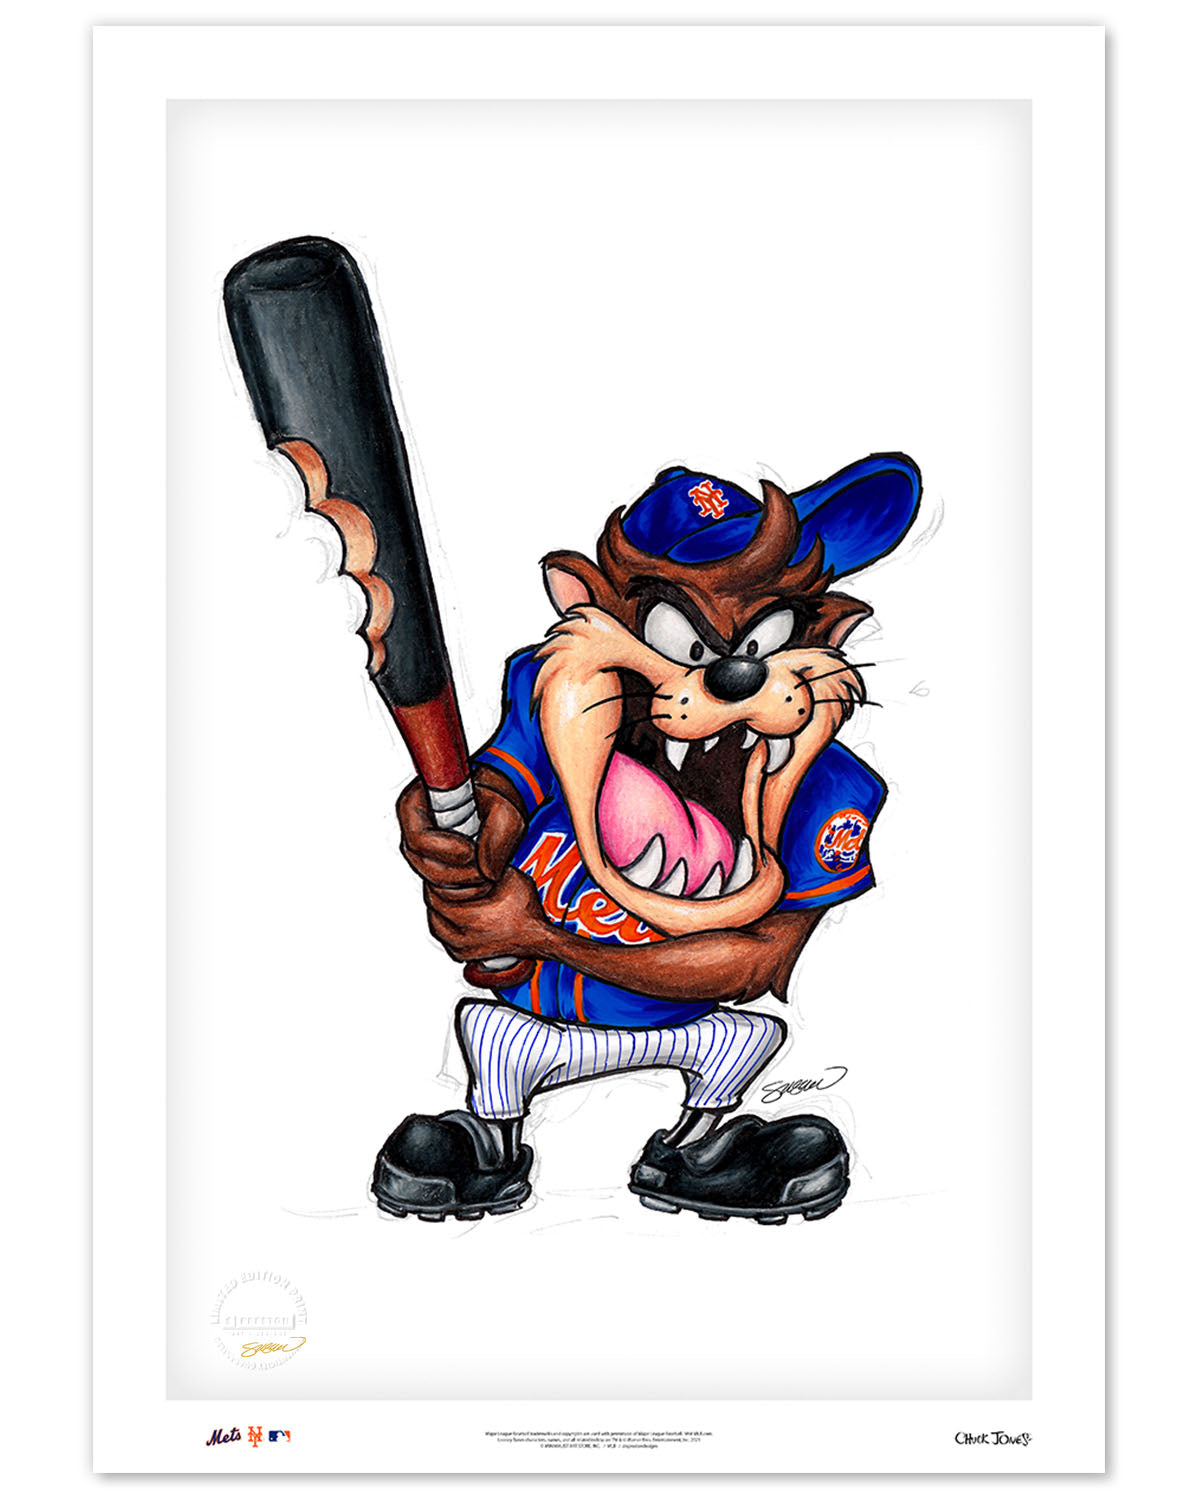 wholesale New York Mets New York Mets Men jerseys, Mets Plus Sizes